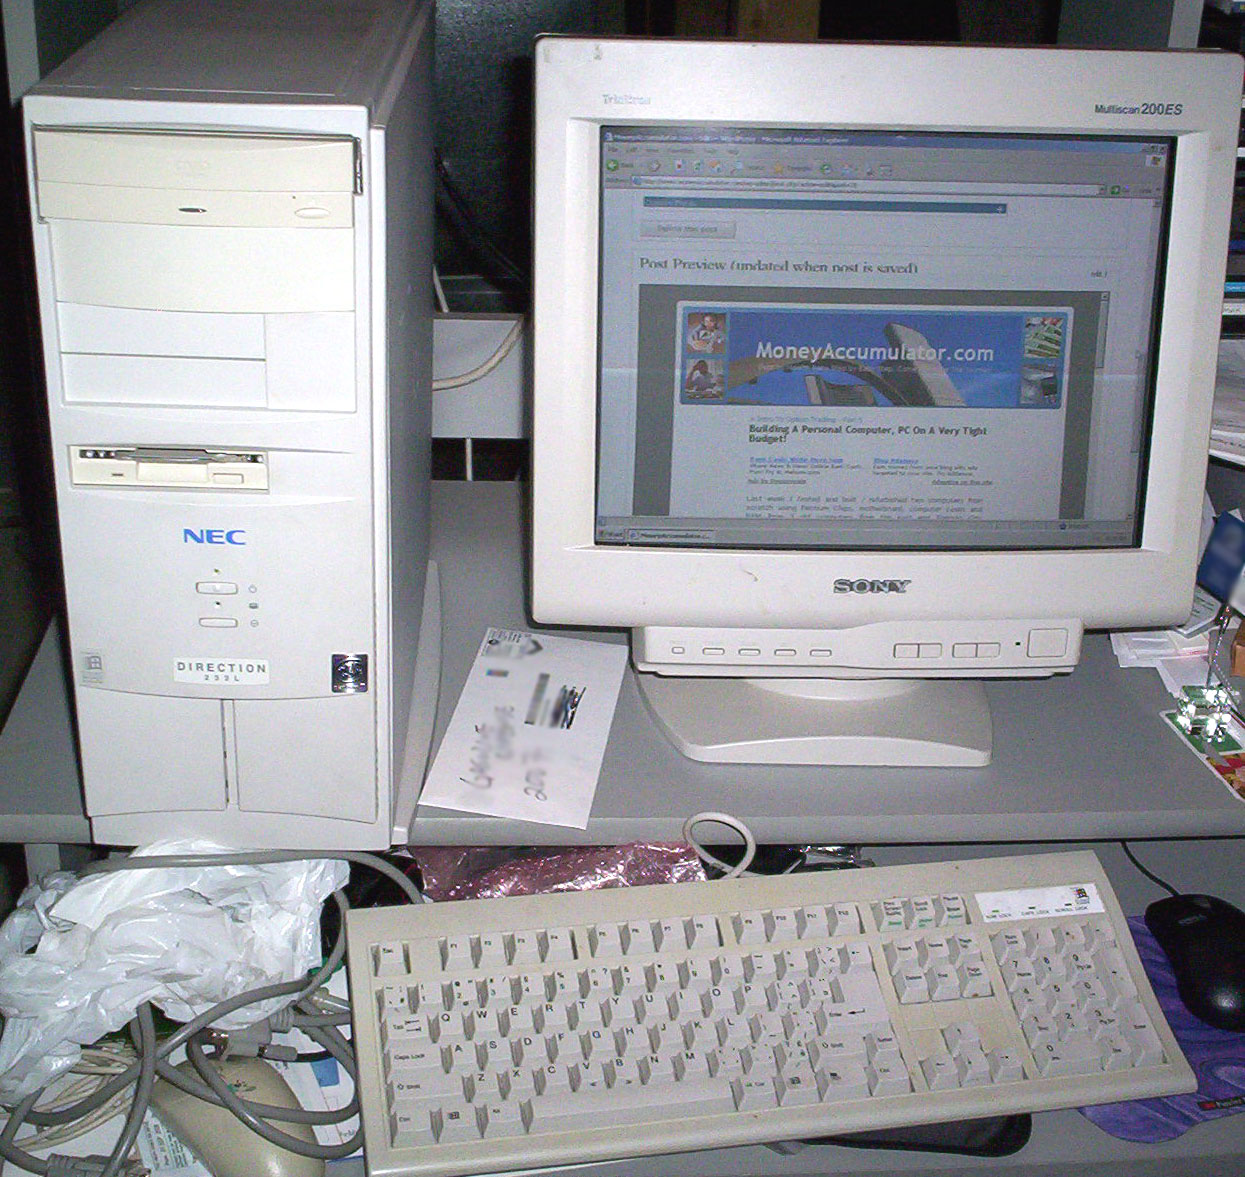 Refurbished computers